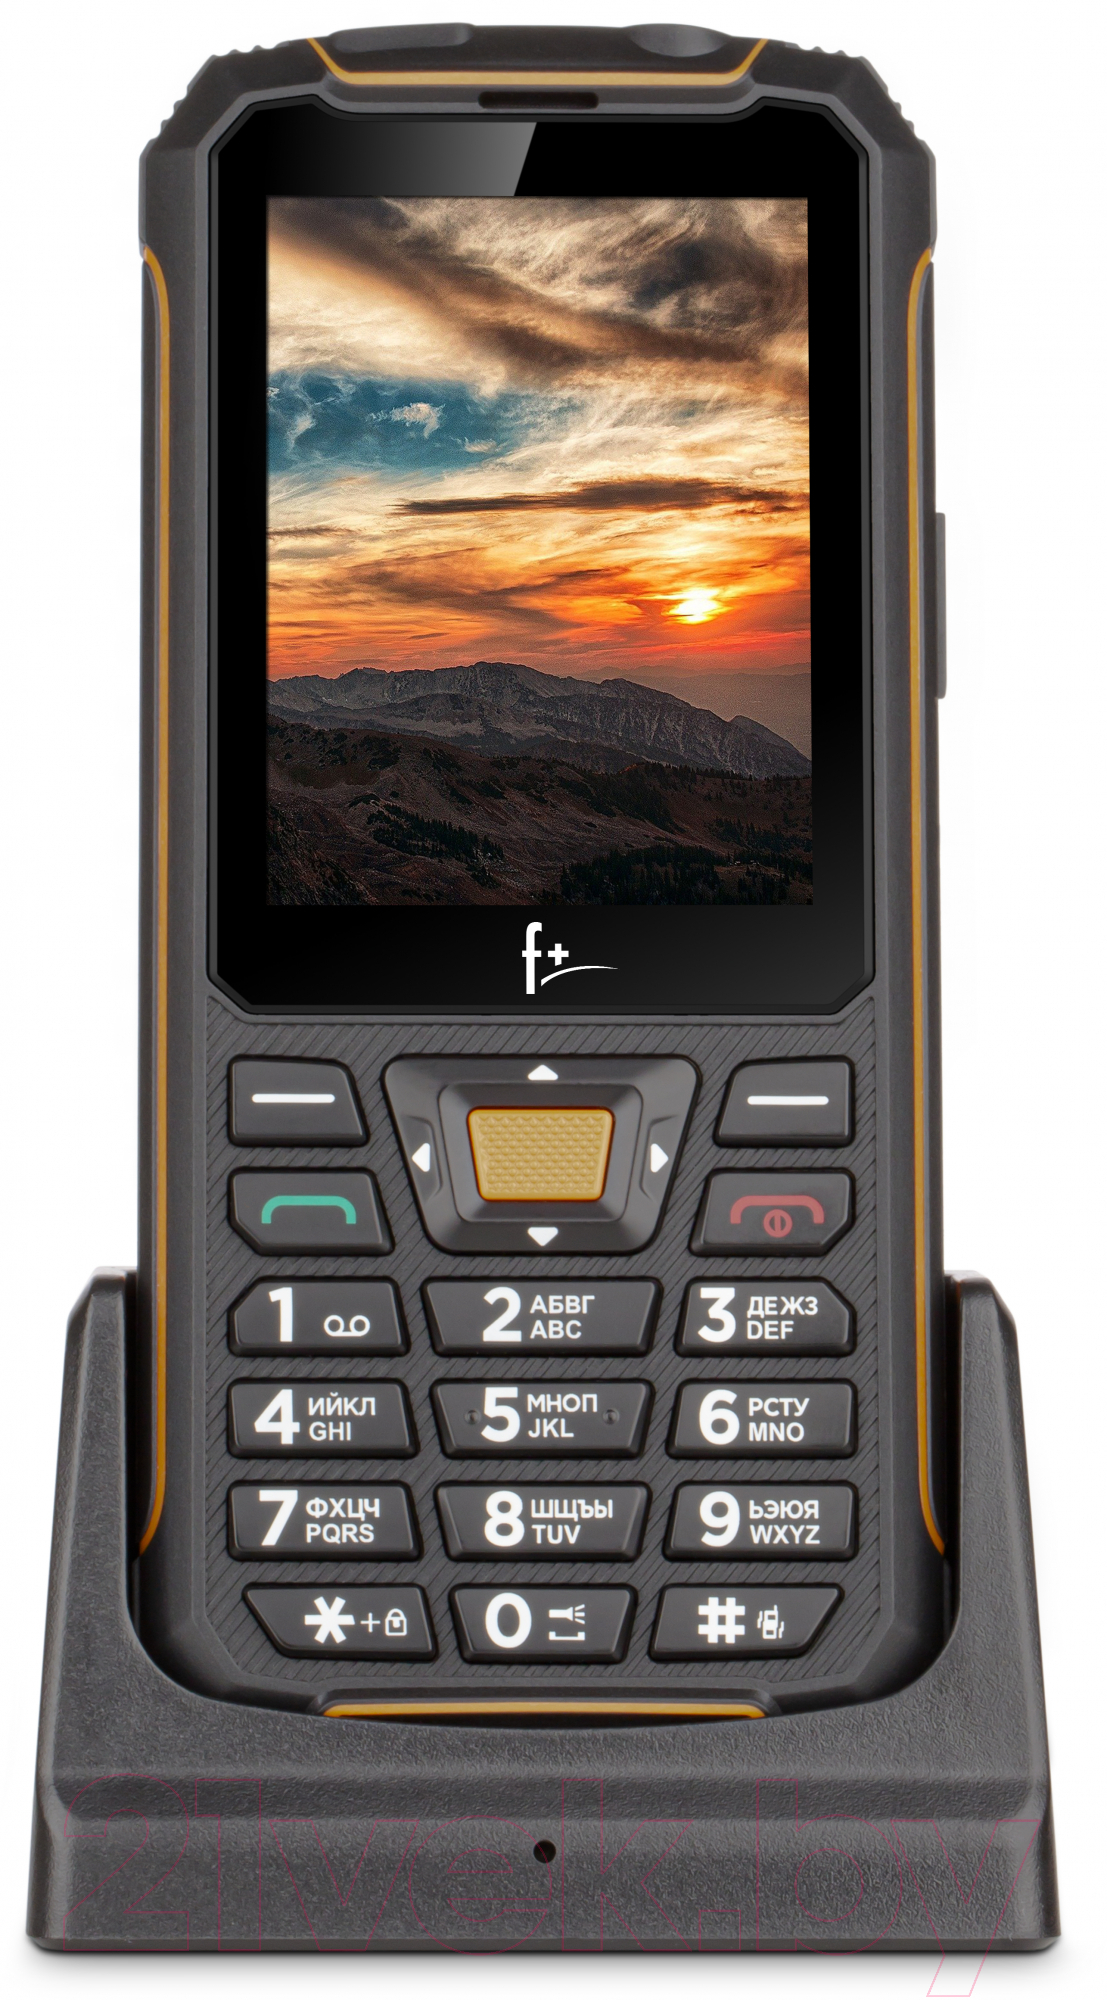 Мобильный телефон F+ R280C